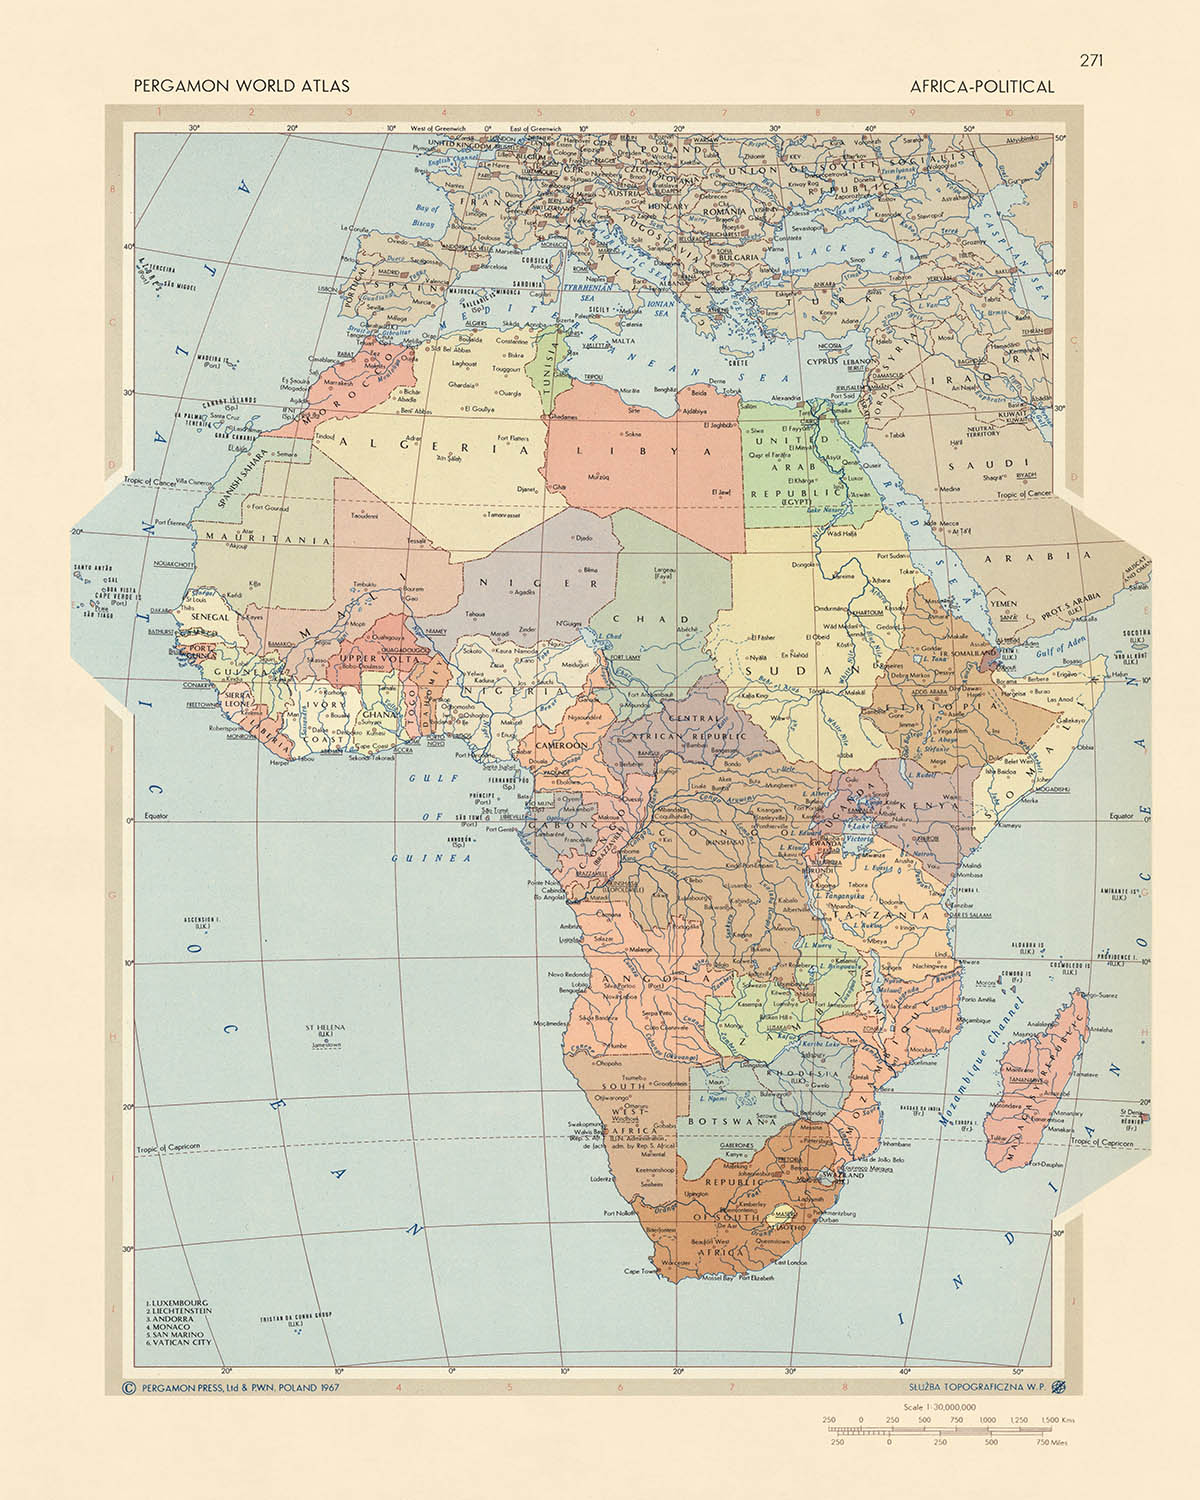 Carte du vieux monde : carte politique de l'Afrique par le service topographique de l'armée polonaise, 1967 : un aperçu du climat géopolitique, un style artistique détaillé et une projection cartographique précise